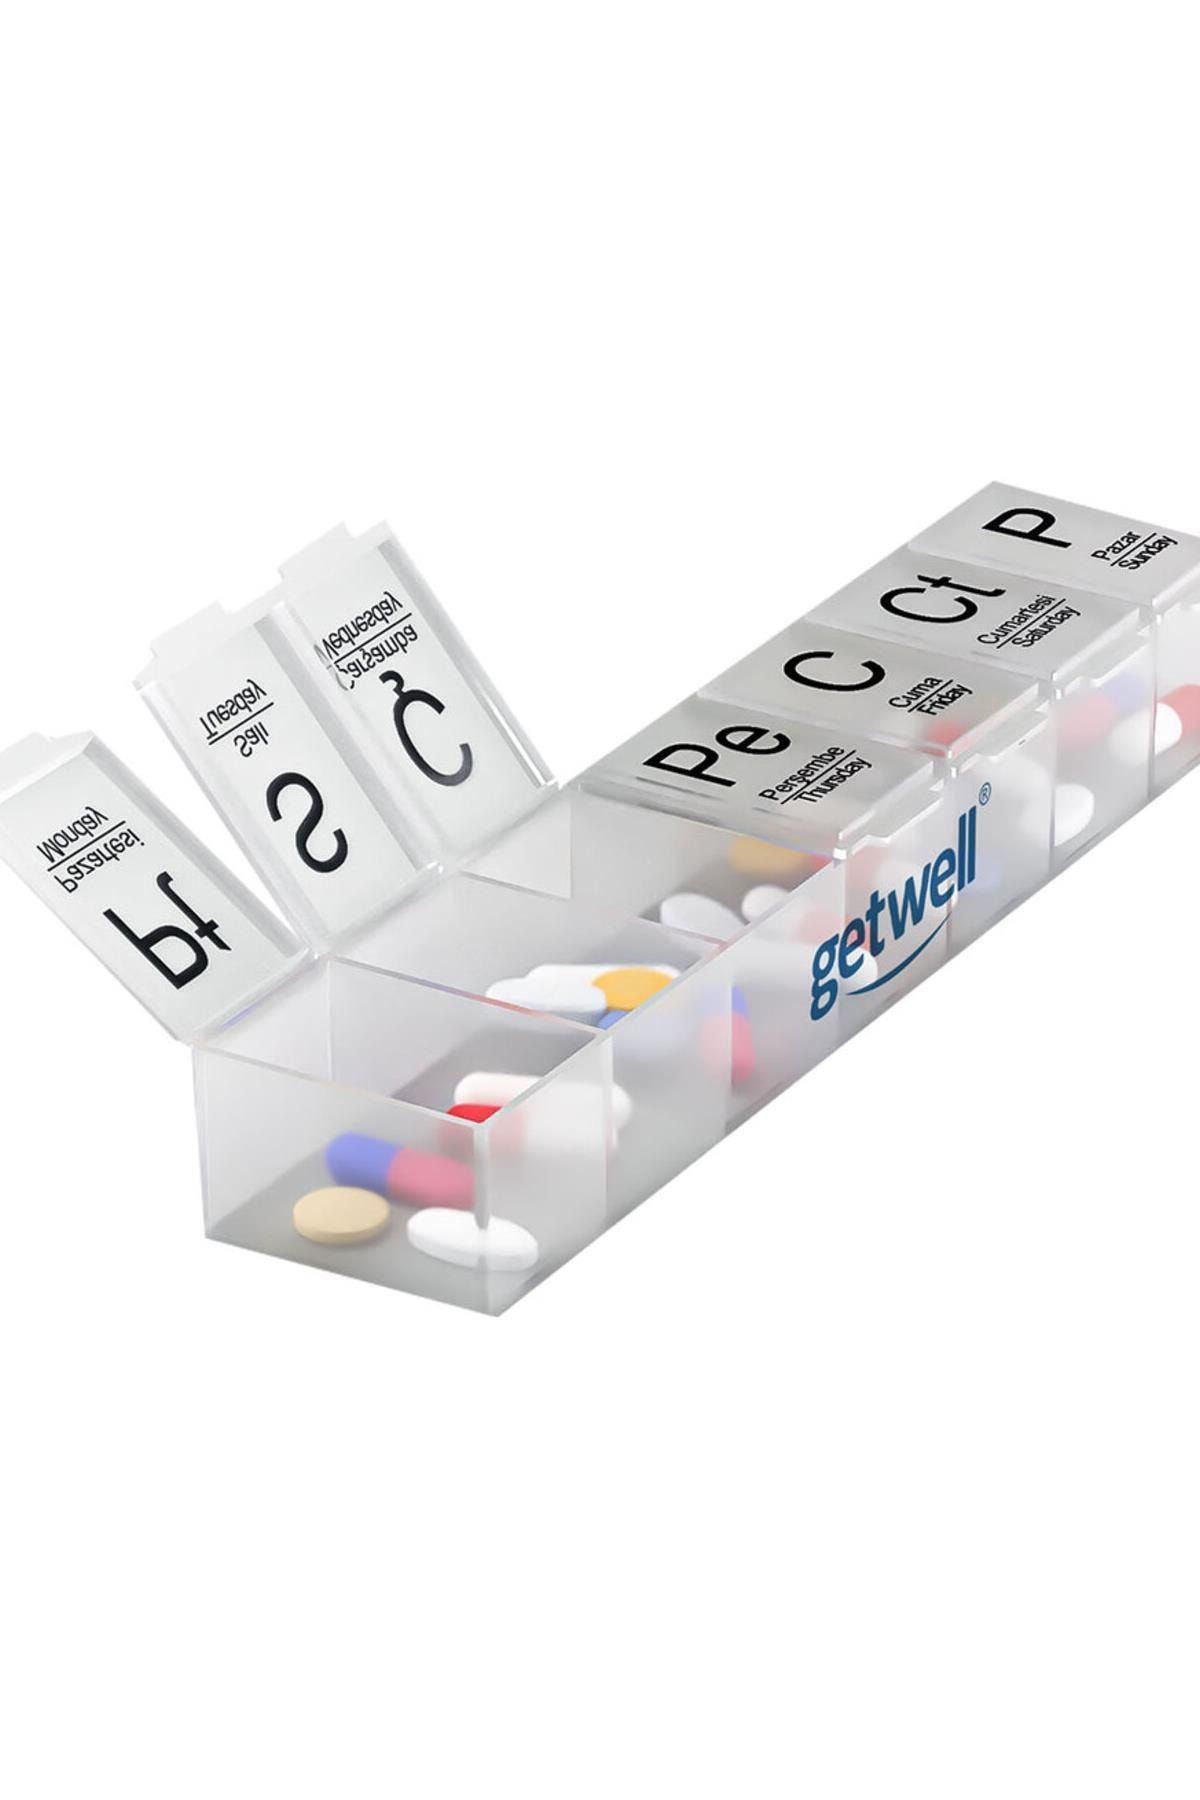 Getwell Haftalık Ilaç Kutusu Kategori: Diğer Sağlık Ürünleri